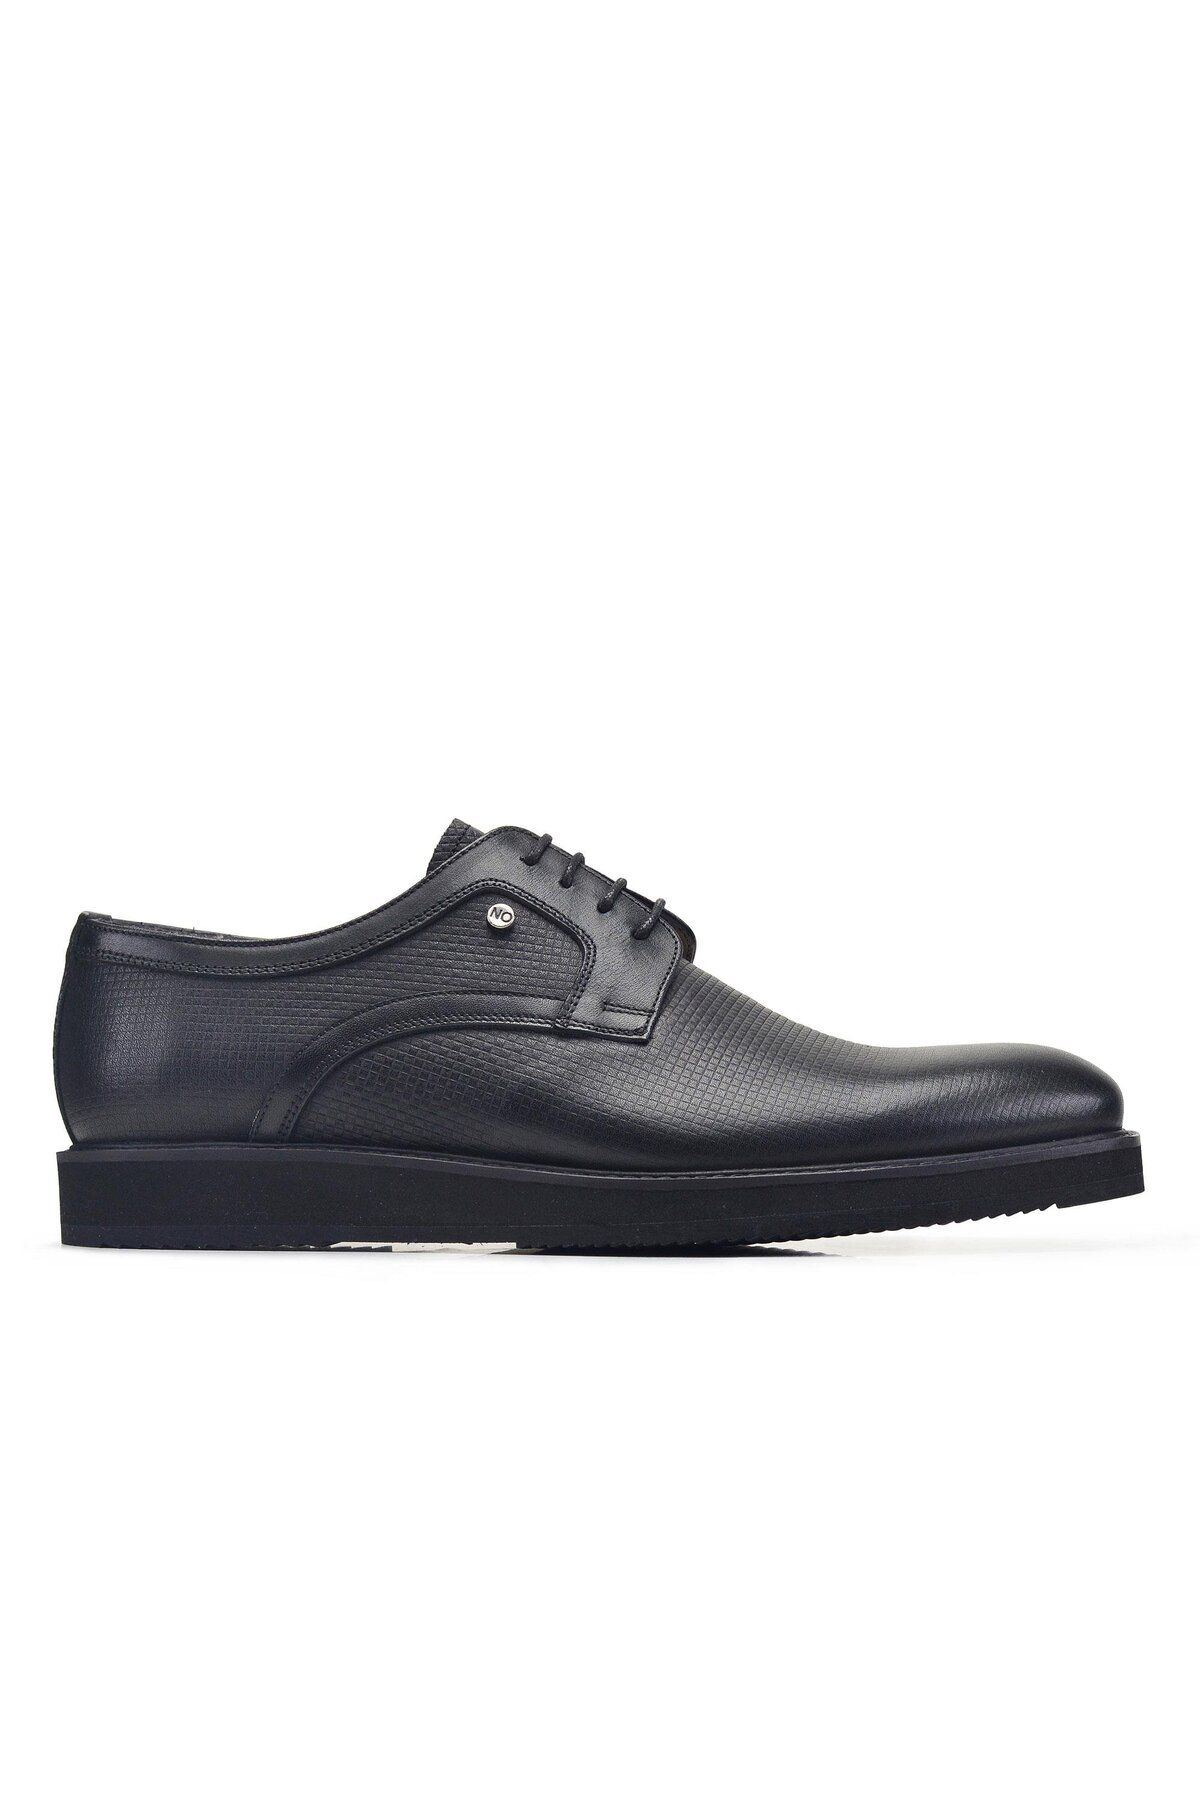 Nevzat Onay Siyah Bağcıklı Erkek Ayakkabı -91413-